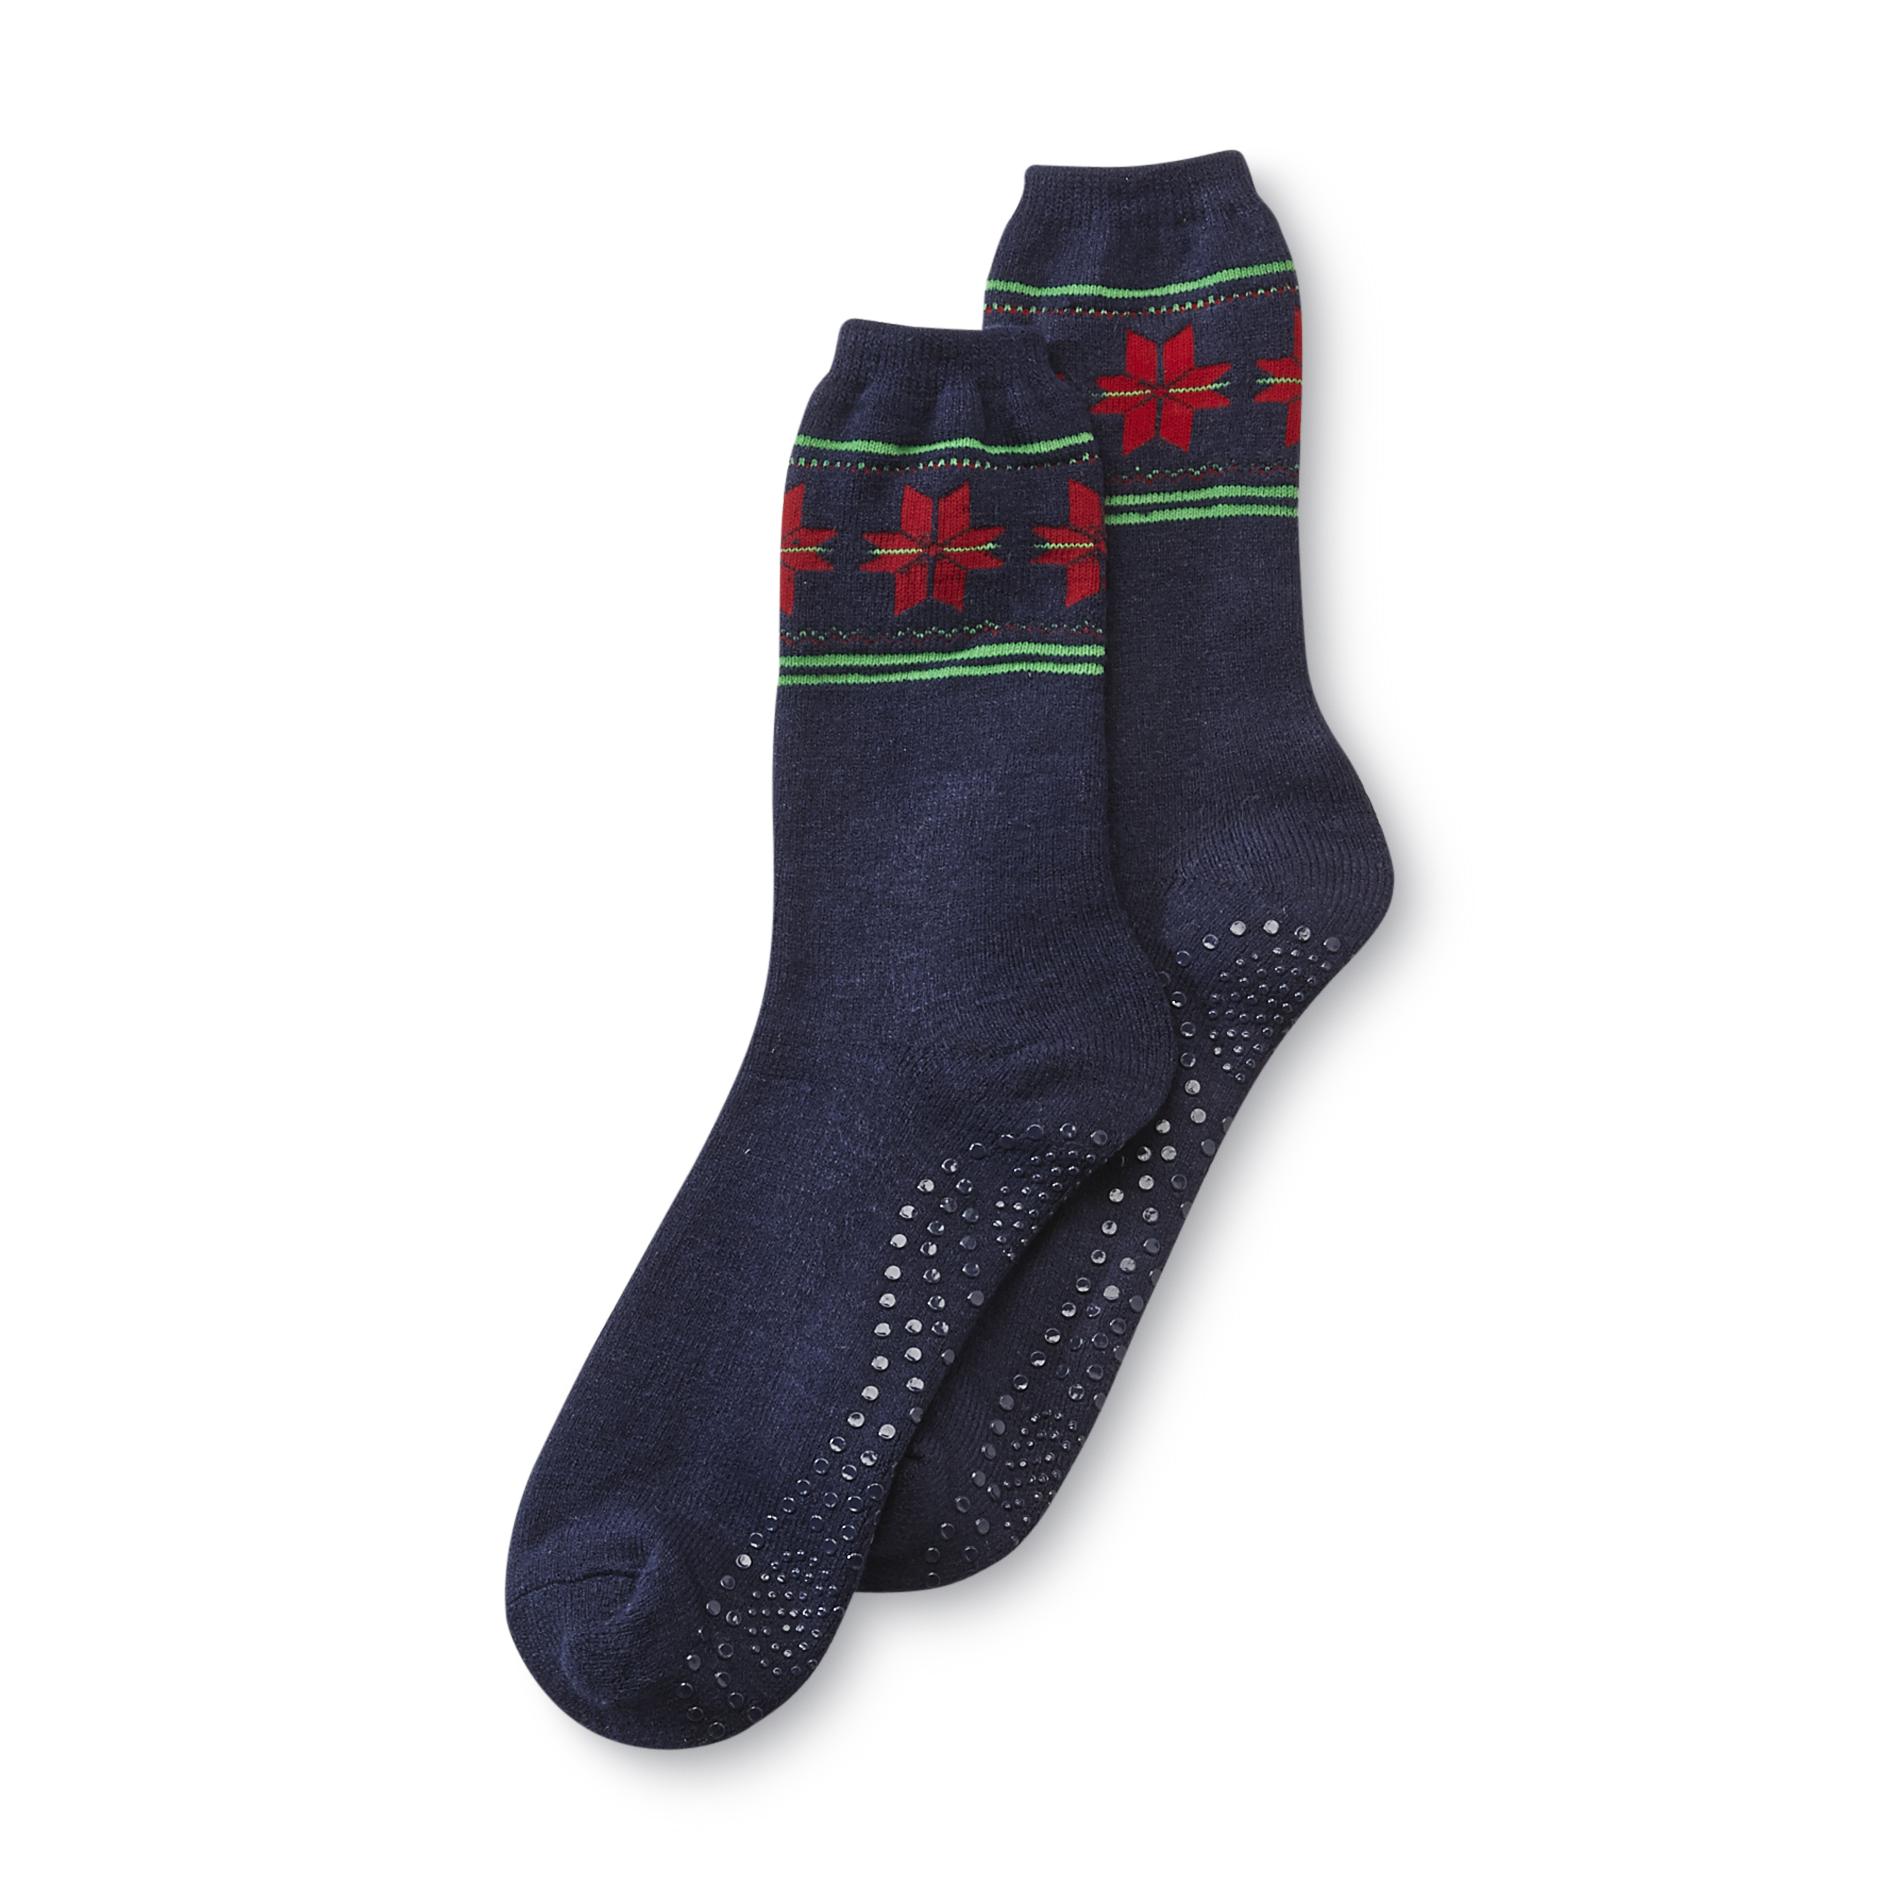 Joe Boxer Men's Holiday Slipper Socks - Poinsettia